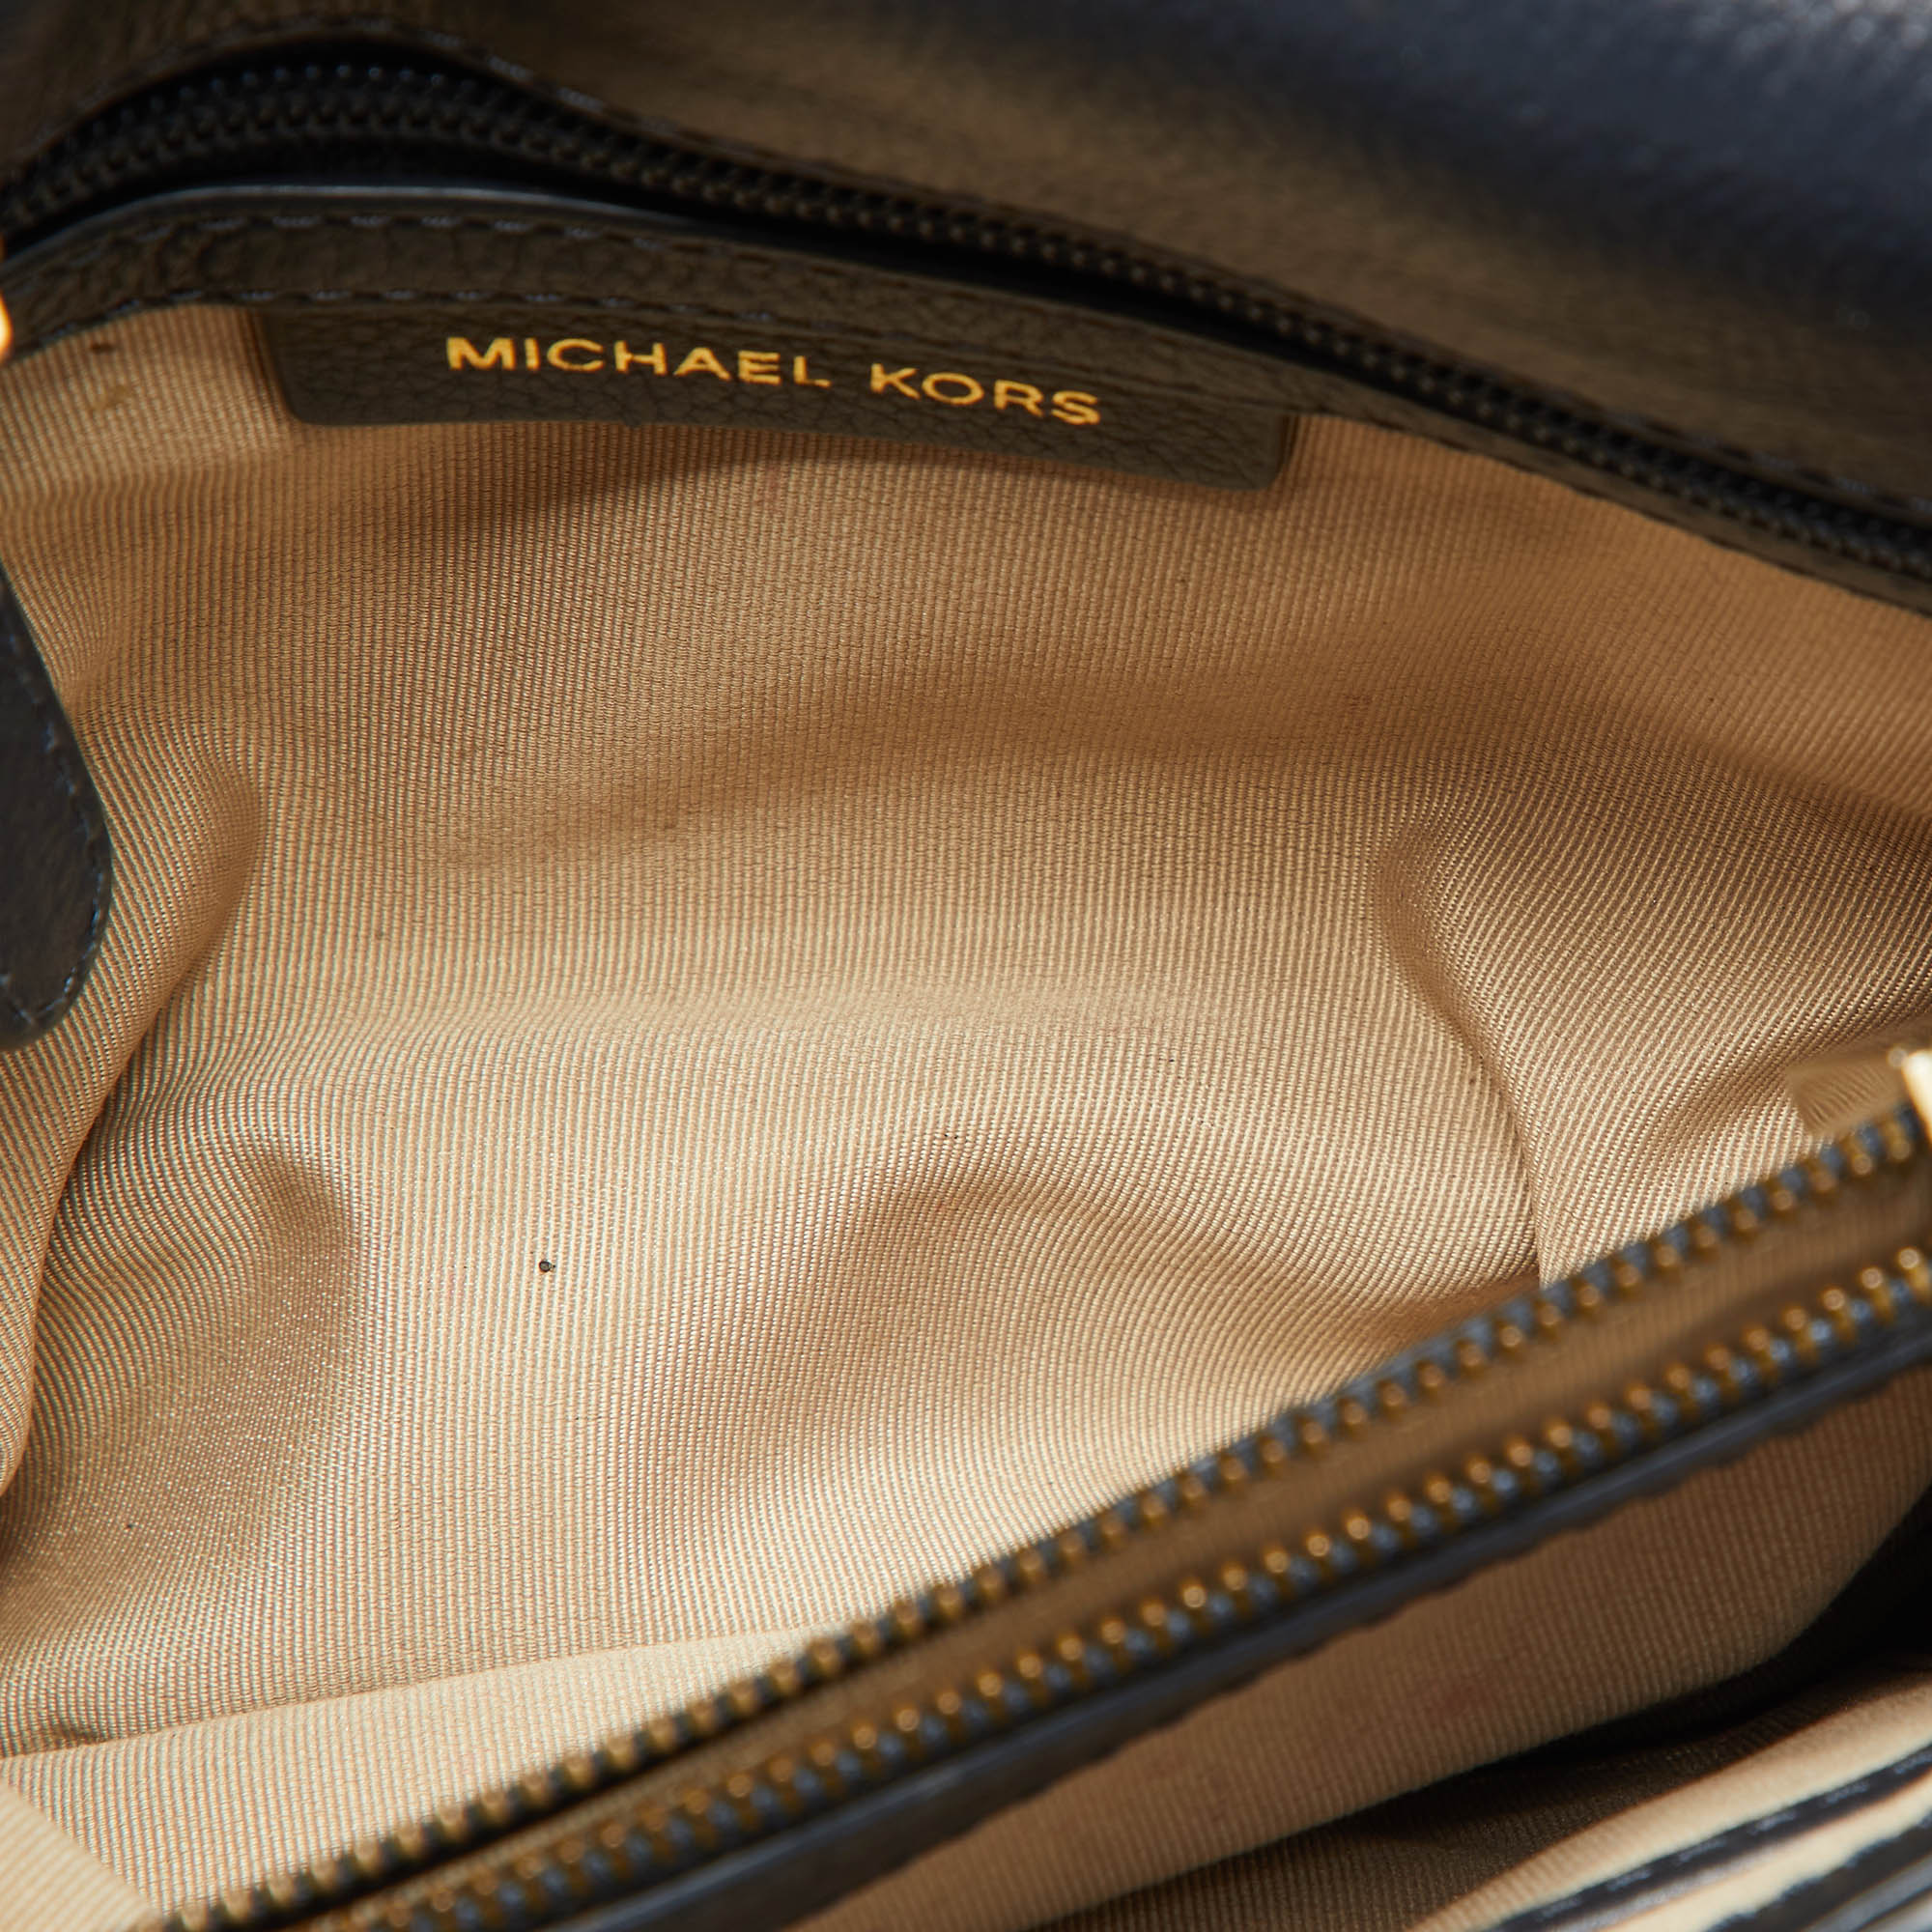 Michael Kors Navy Blue/White Woven Leather Whitney Shoulder Bag